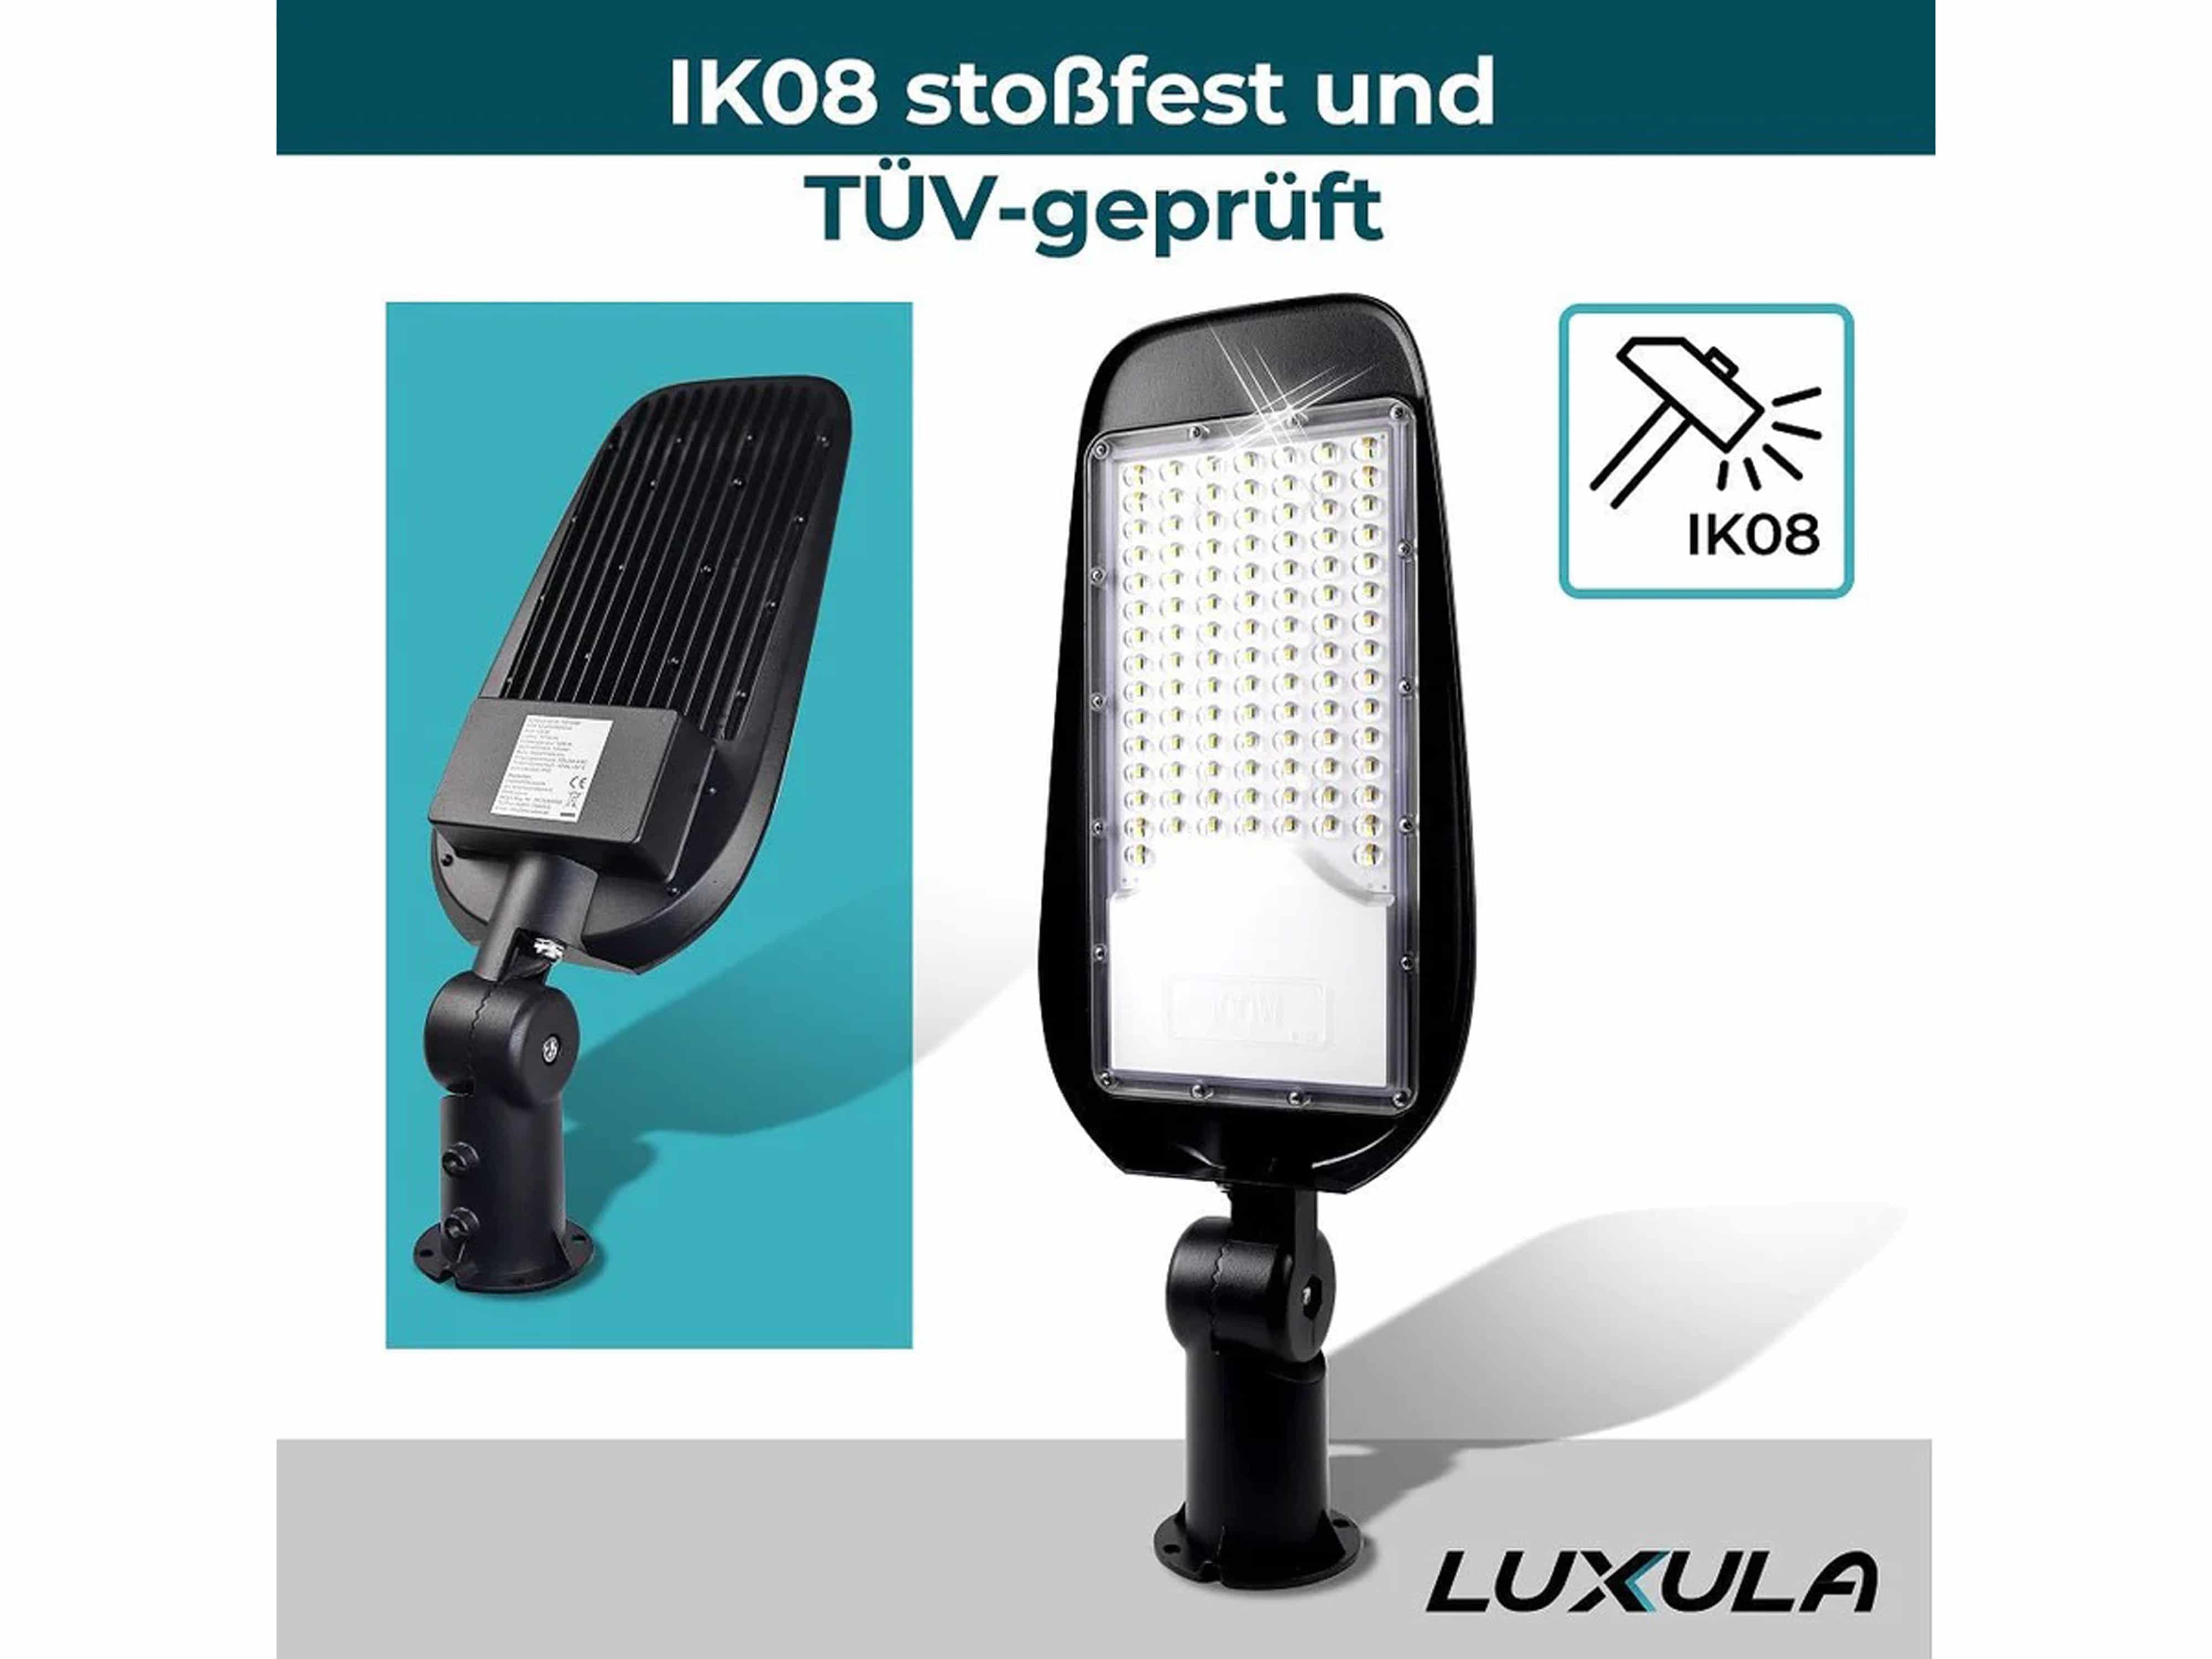 LUXULA LED-Straßenleuchte, EEK: E, 50W, 6000lm, 5000K, IP65